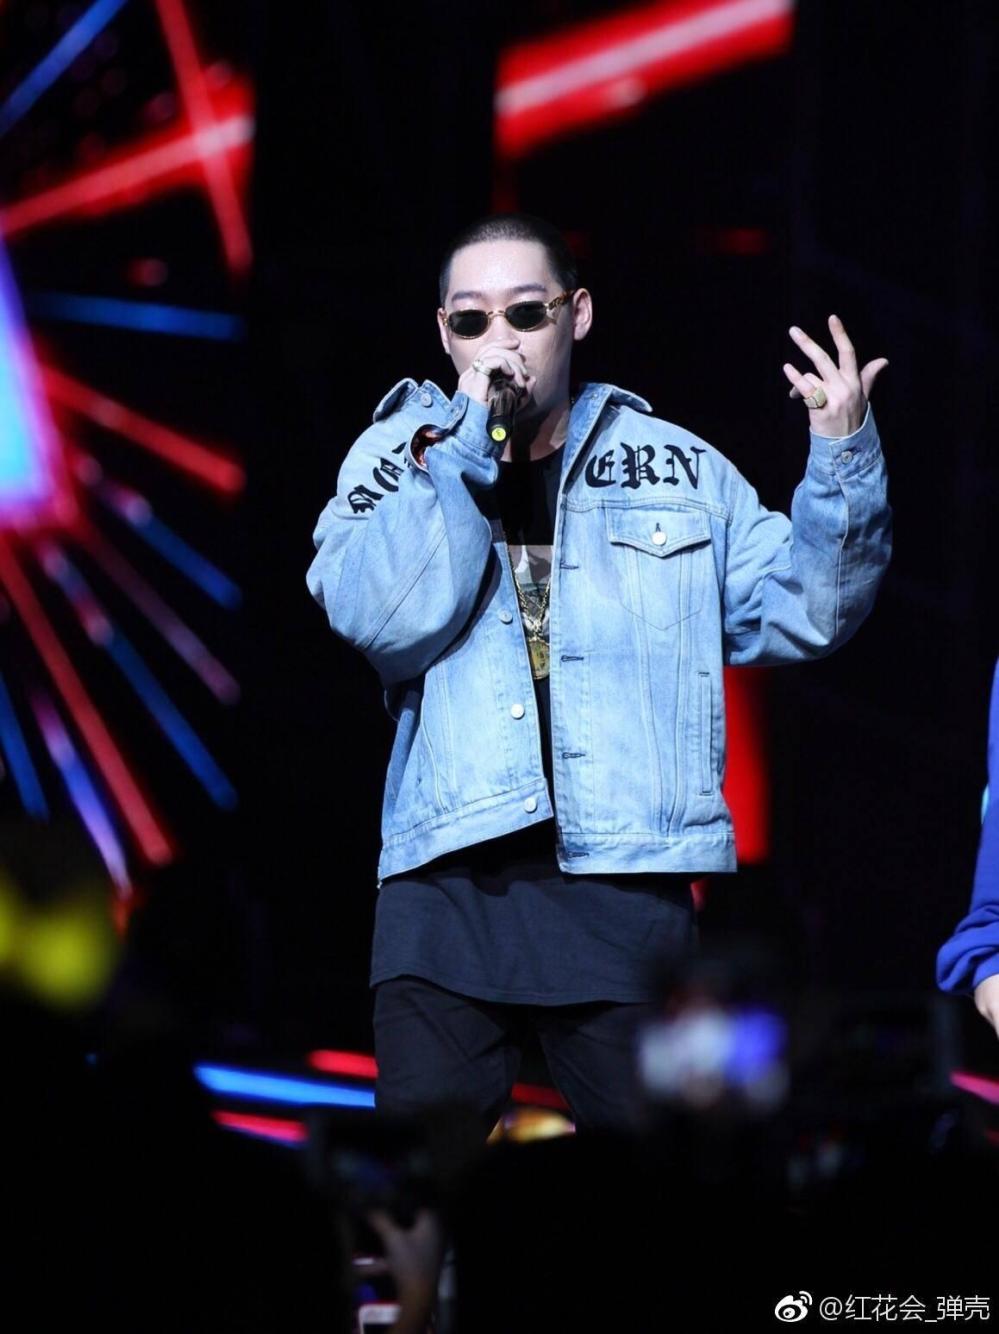 《中国有嘻哈》歌手纷纷被扒黑料, pgone还能翻身吗?